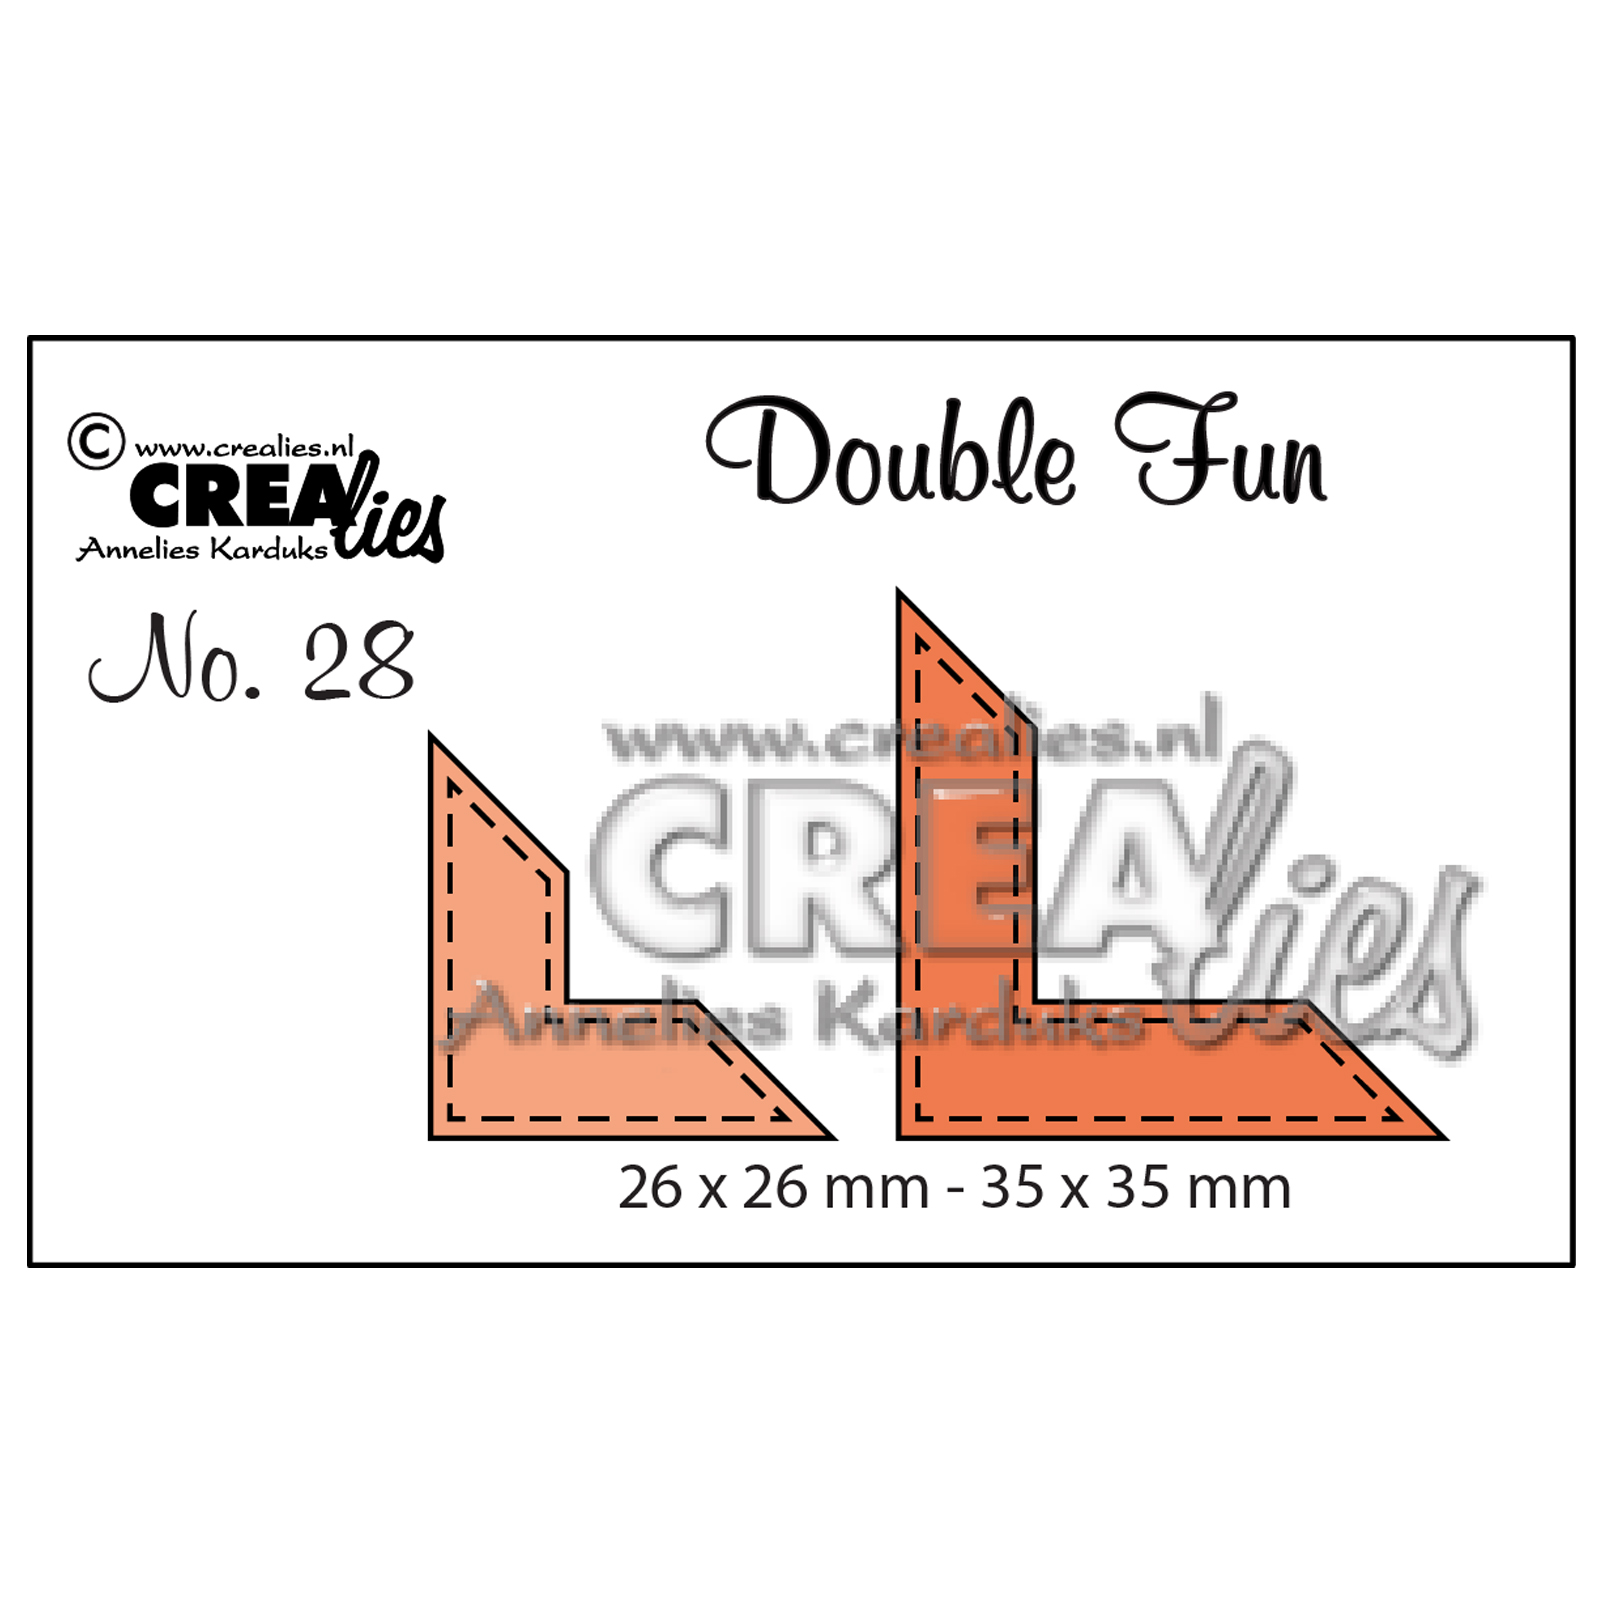 Crealies • Double fun plantilla de corte no.28 Corners with stitchline